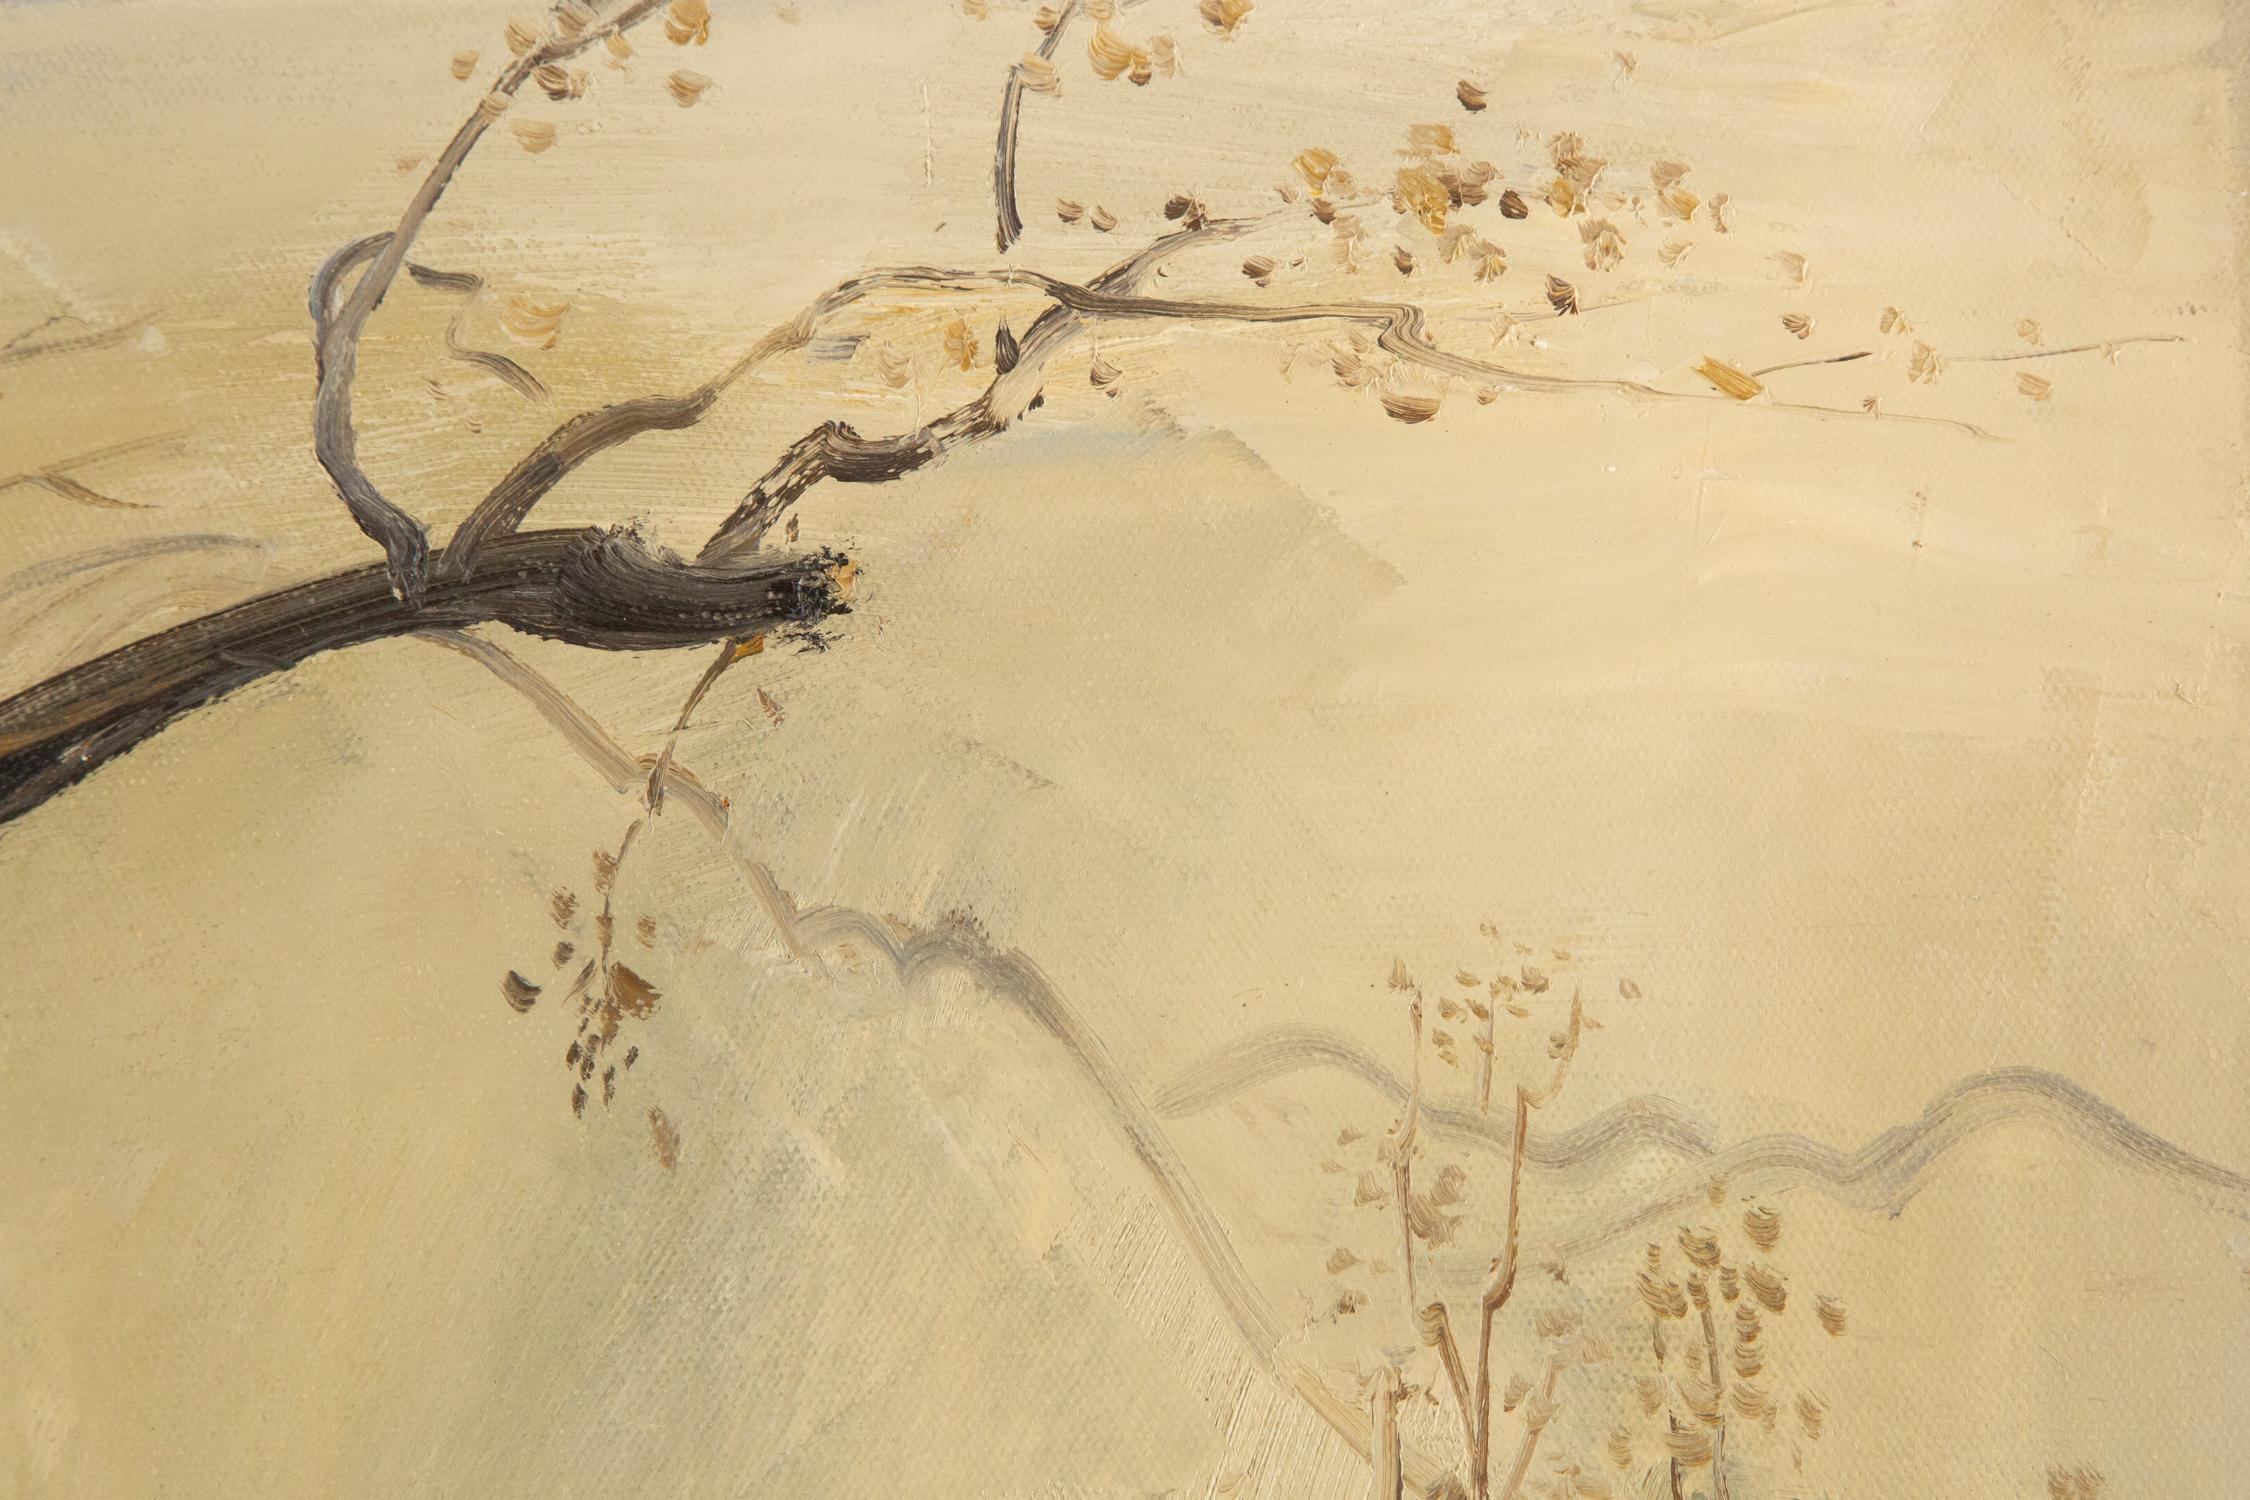 Sheng Hui Landscape Original Oil On Canvas 